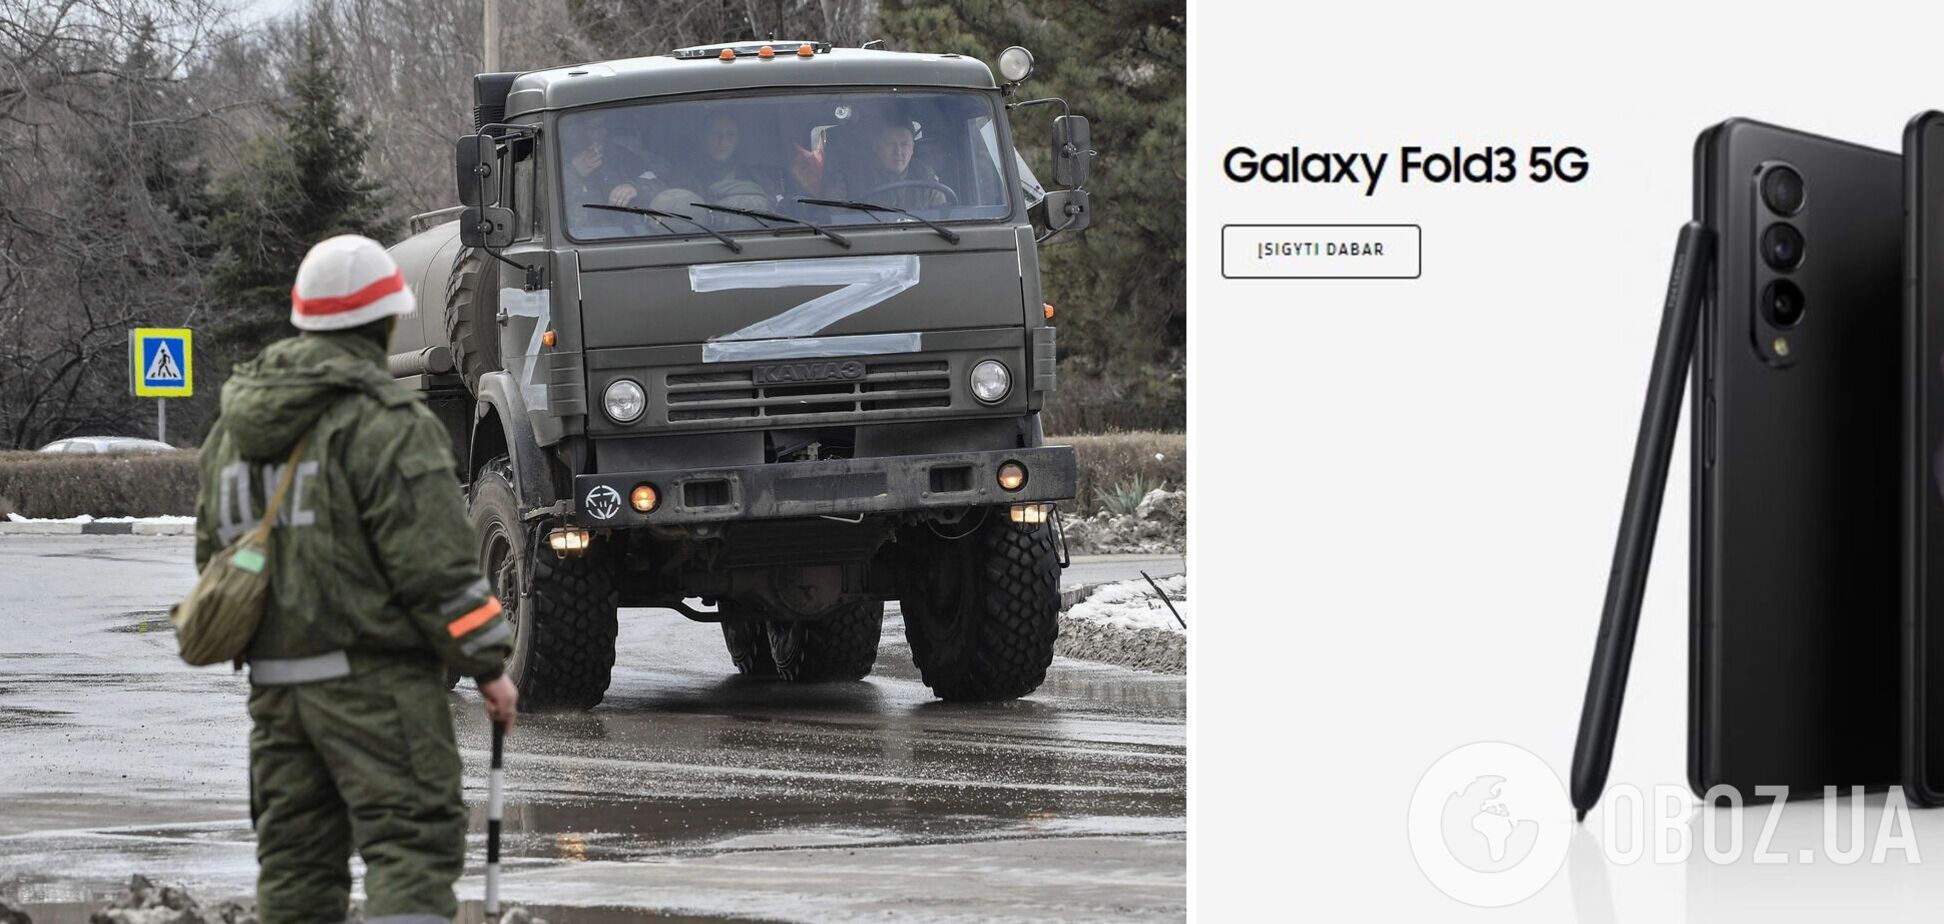 Буква 'Z' больше не используется на некоторых сайтах Samsung